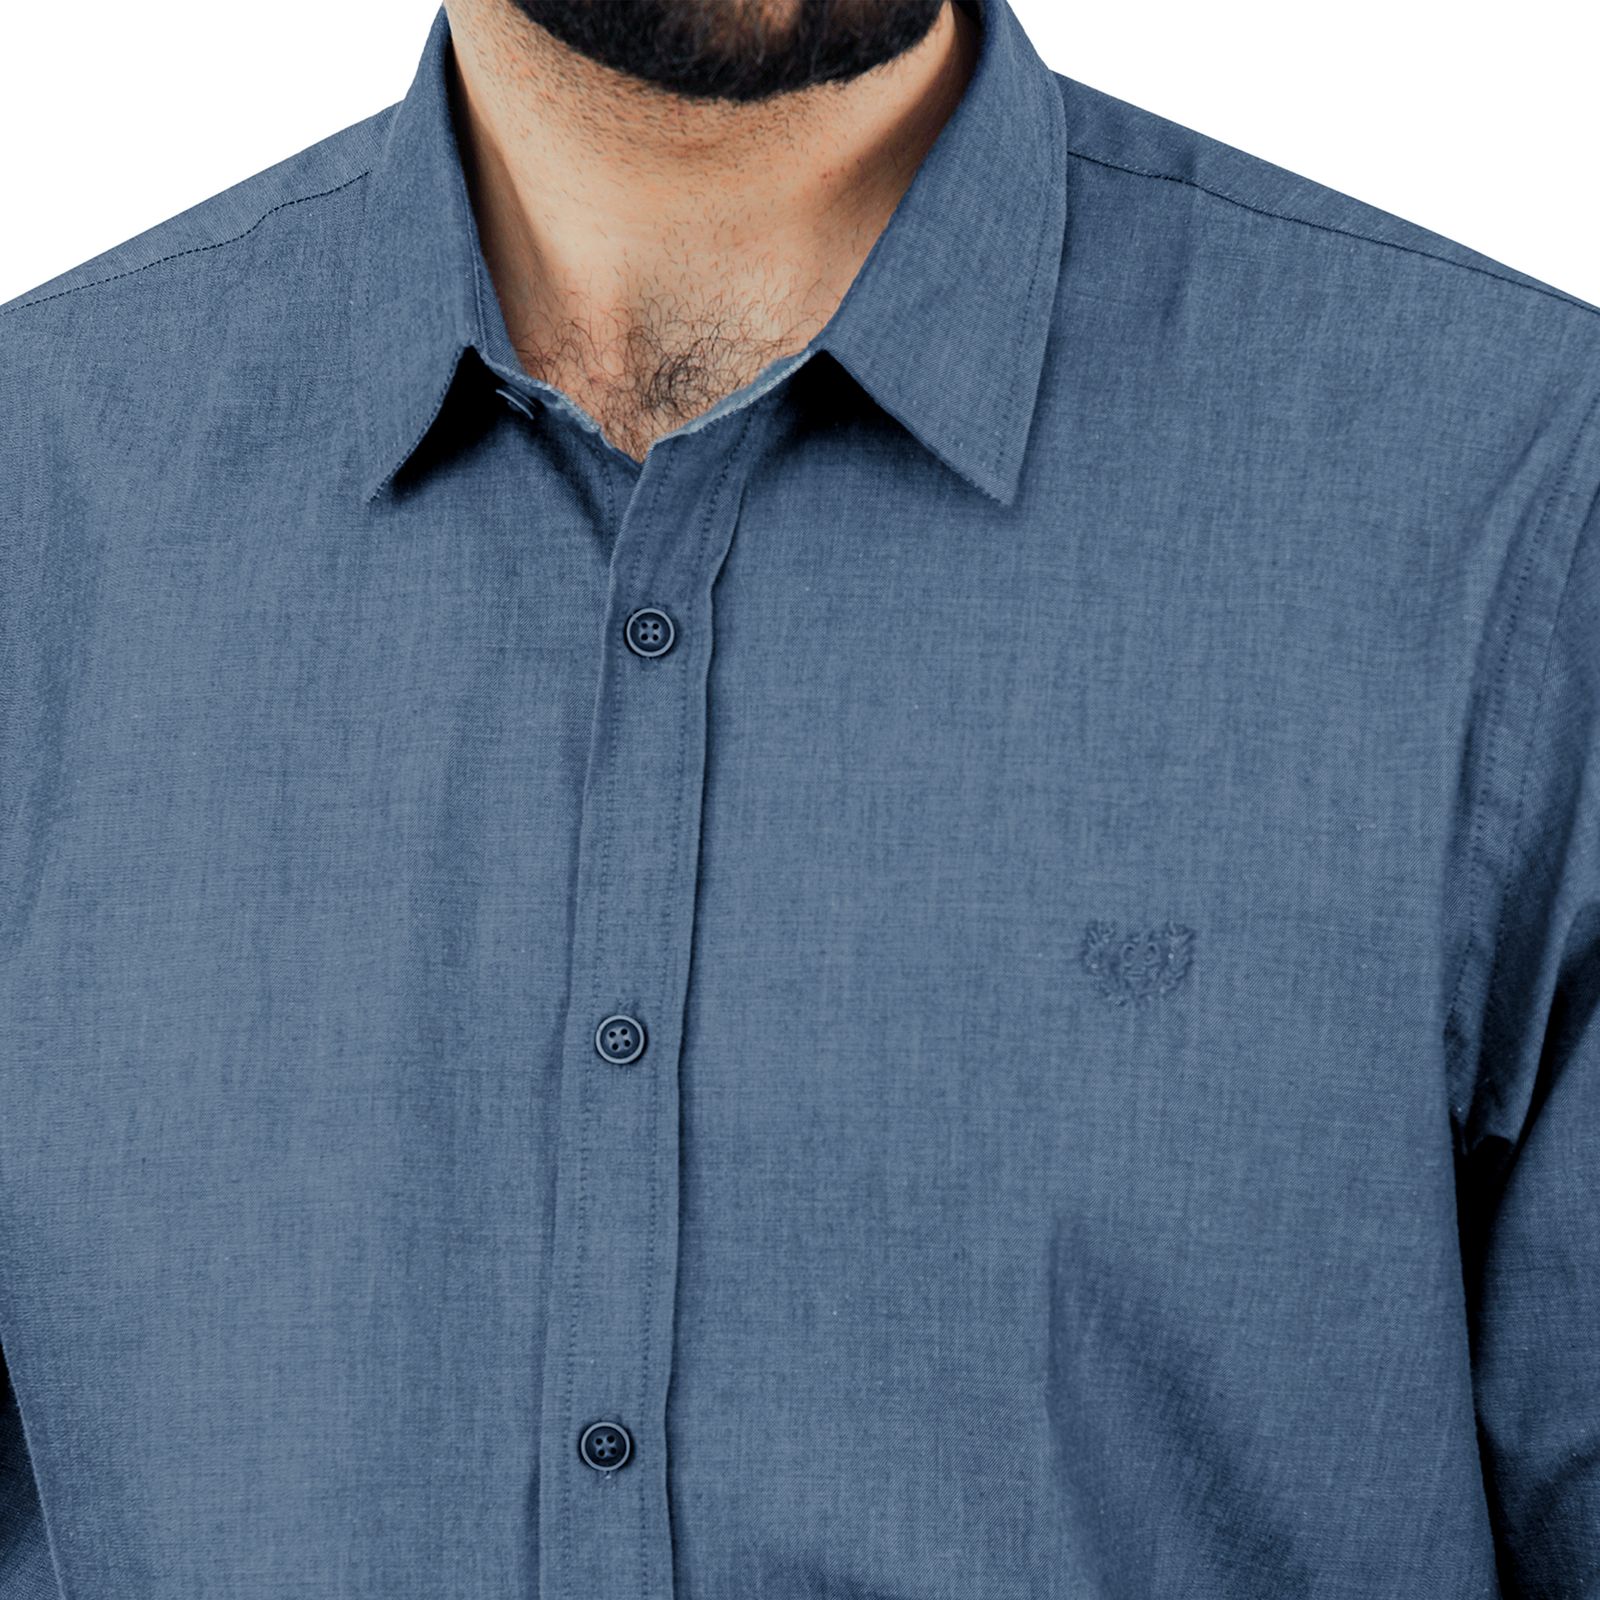 پیراهن آستین بلند مردانه پاتن جامه مدل   102721020242290 طرح جین -  - 4